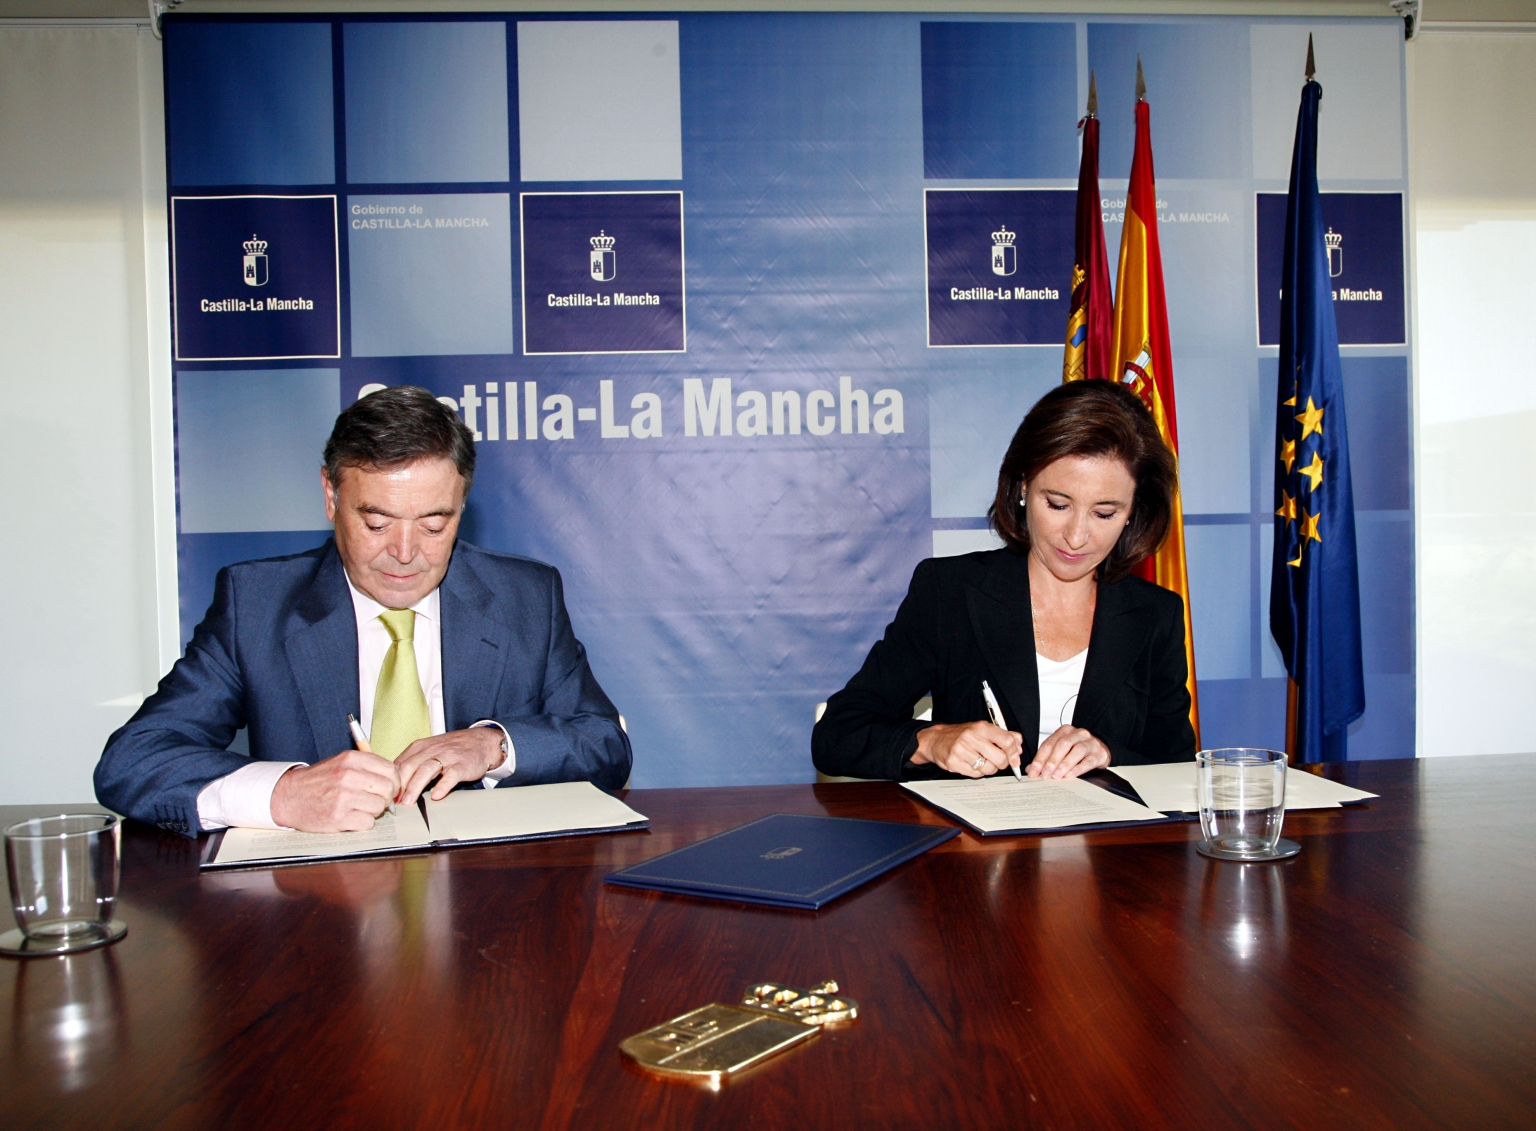 Francisco Gil-Ortega Rincon, président d’Enresa, et Marta Garcia de la Calzad, responsable de l’autorité de développement régionale Castille-La Manche, signent un accord de coopération en vue de l’amélioration des routes aux abords du futur dépôt intermédiaire.